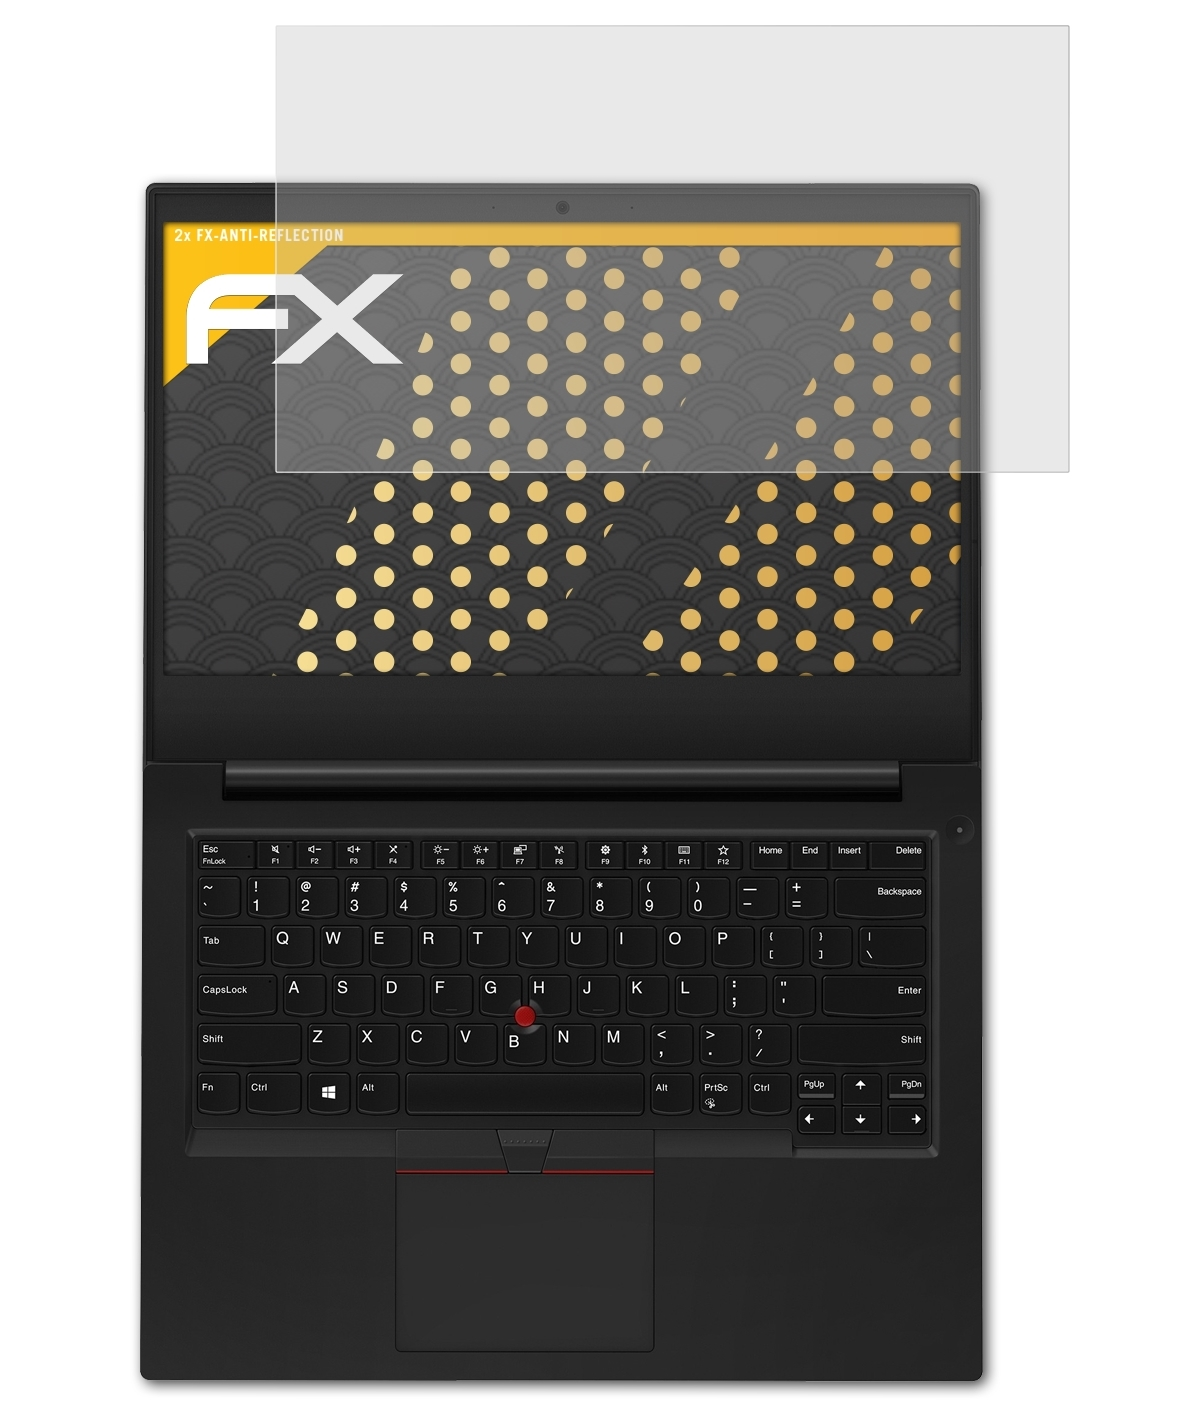 Displayschutz(für ATFOLIX ThinkPad E495) Lenovo 2x FX-Antireflex